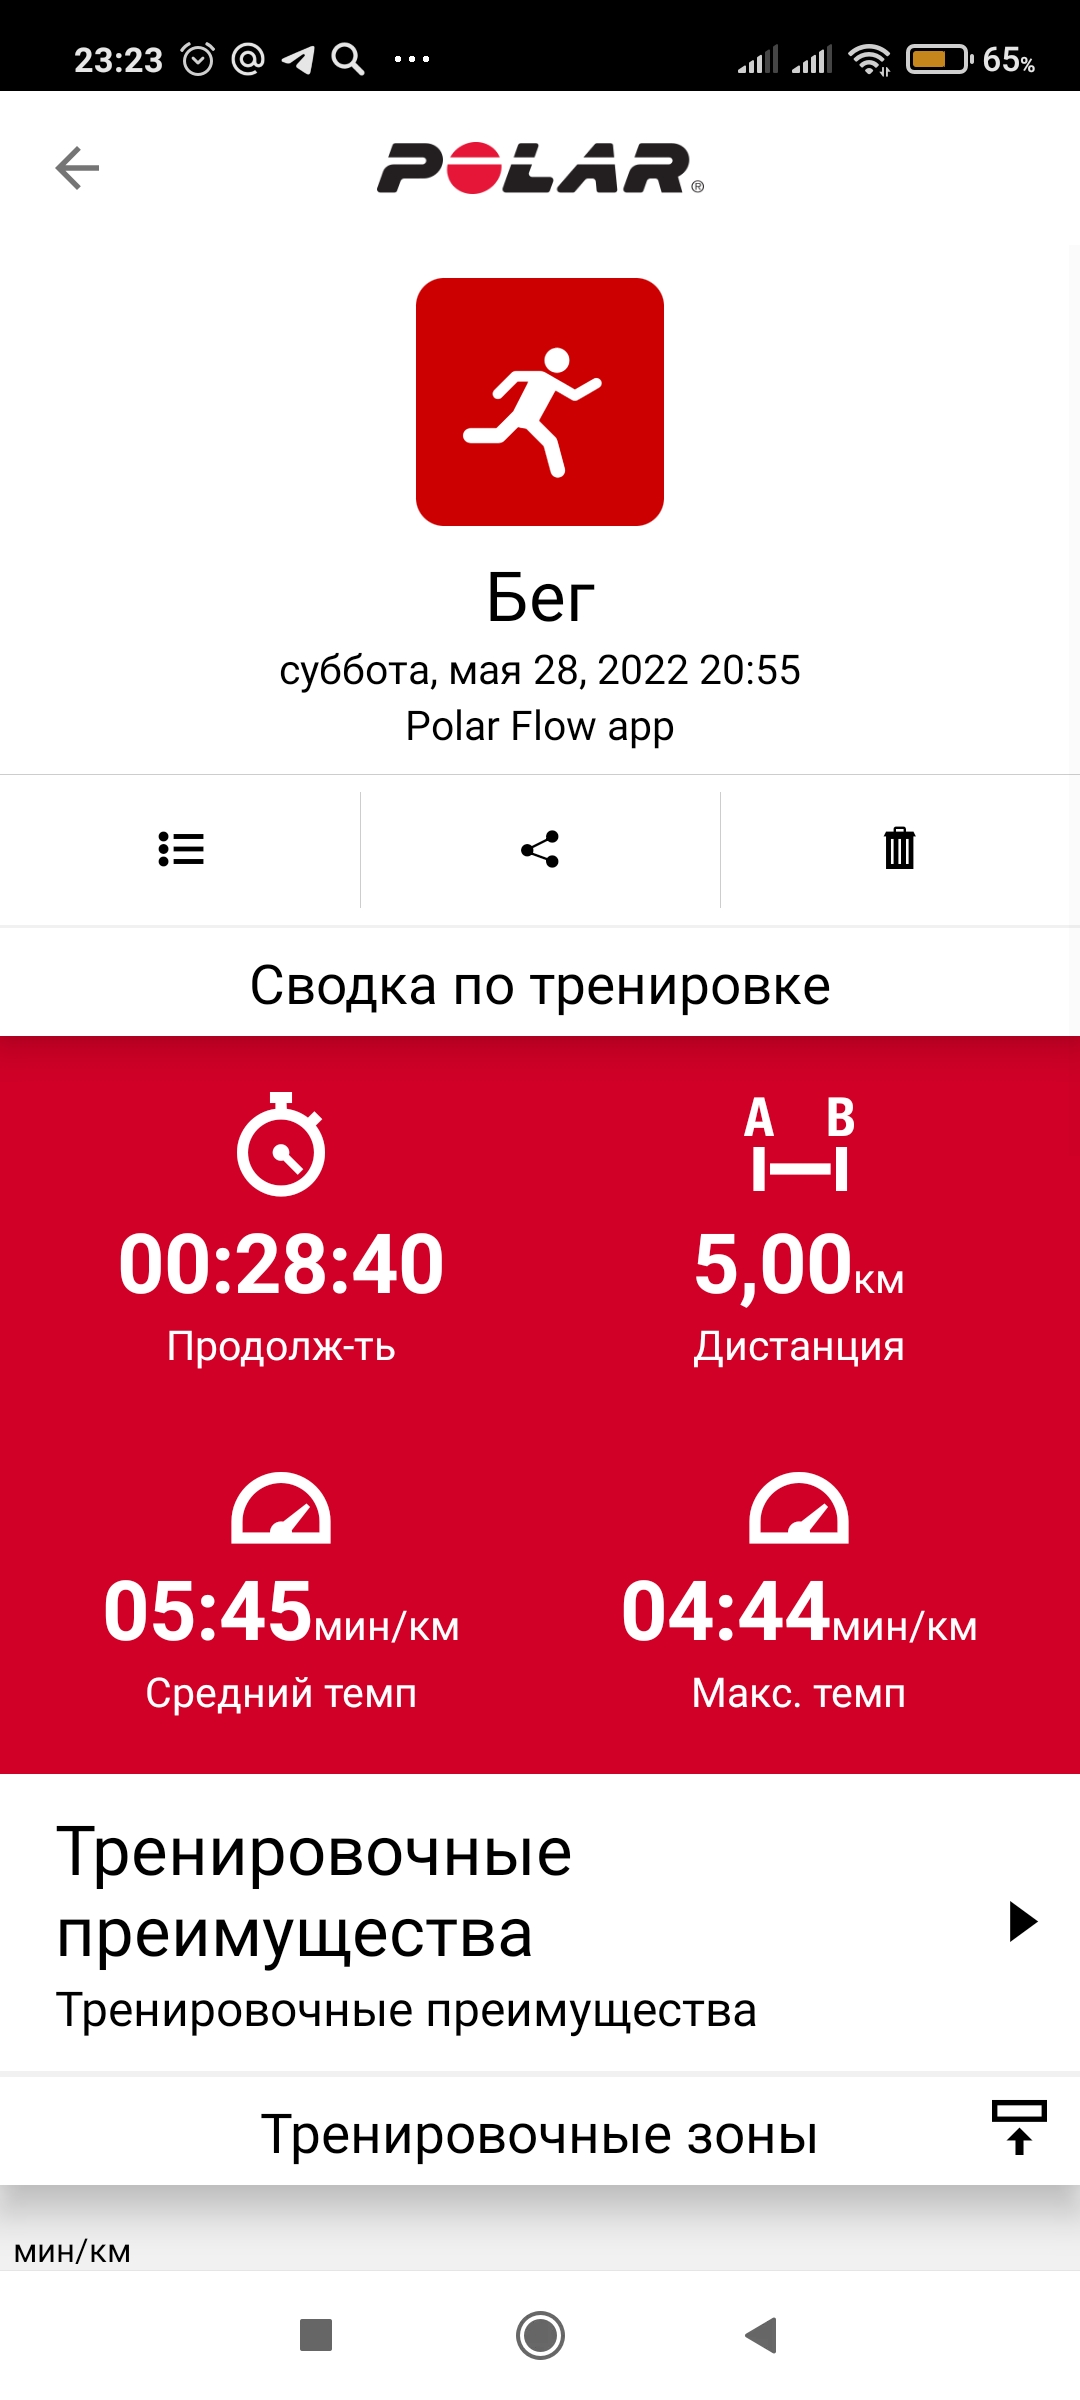  Загрузка от 28.05.2022 00:00:00 Голиков Александр 